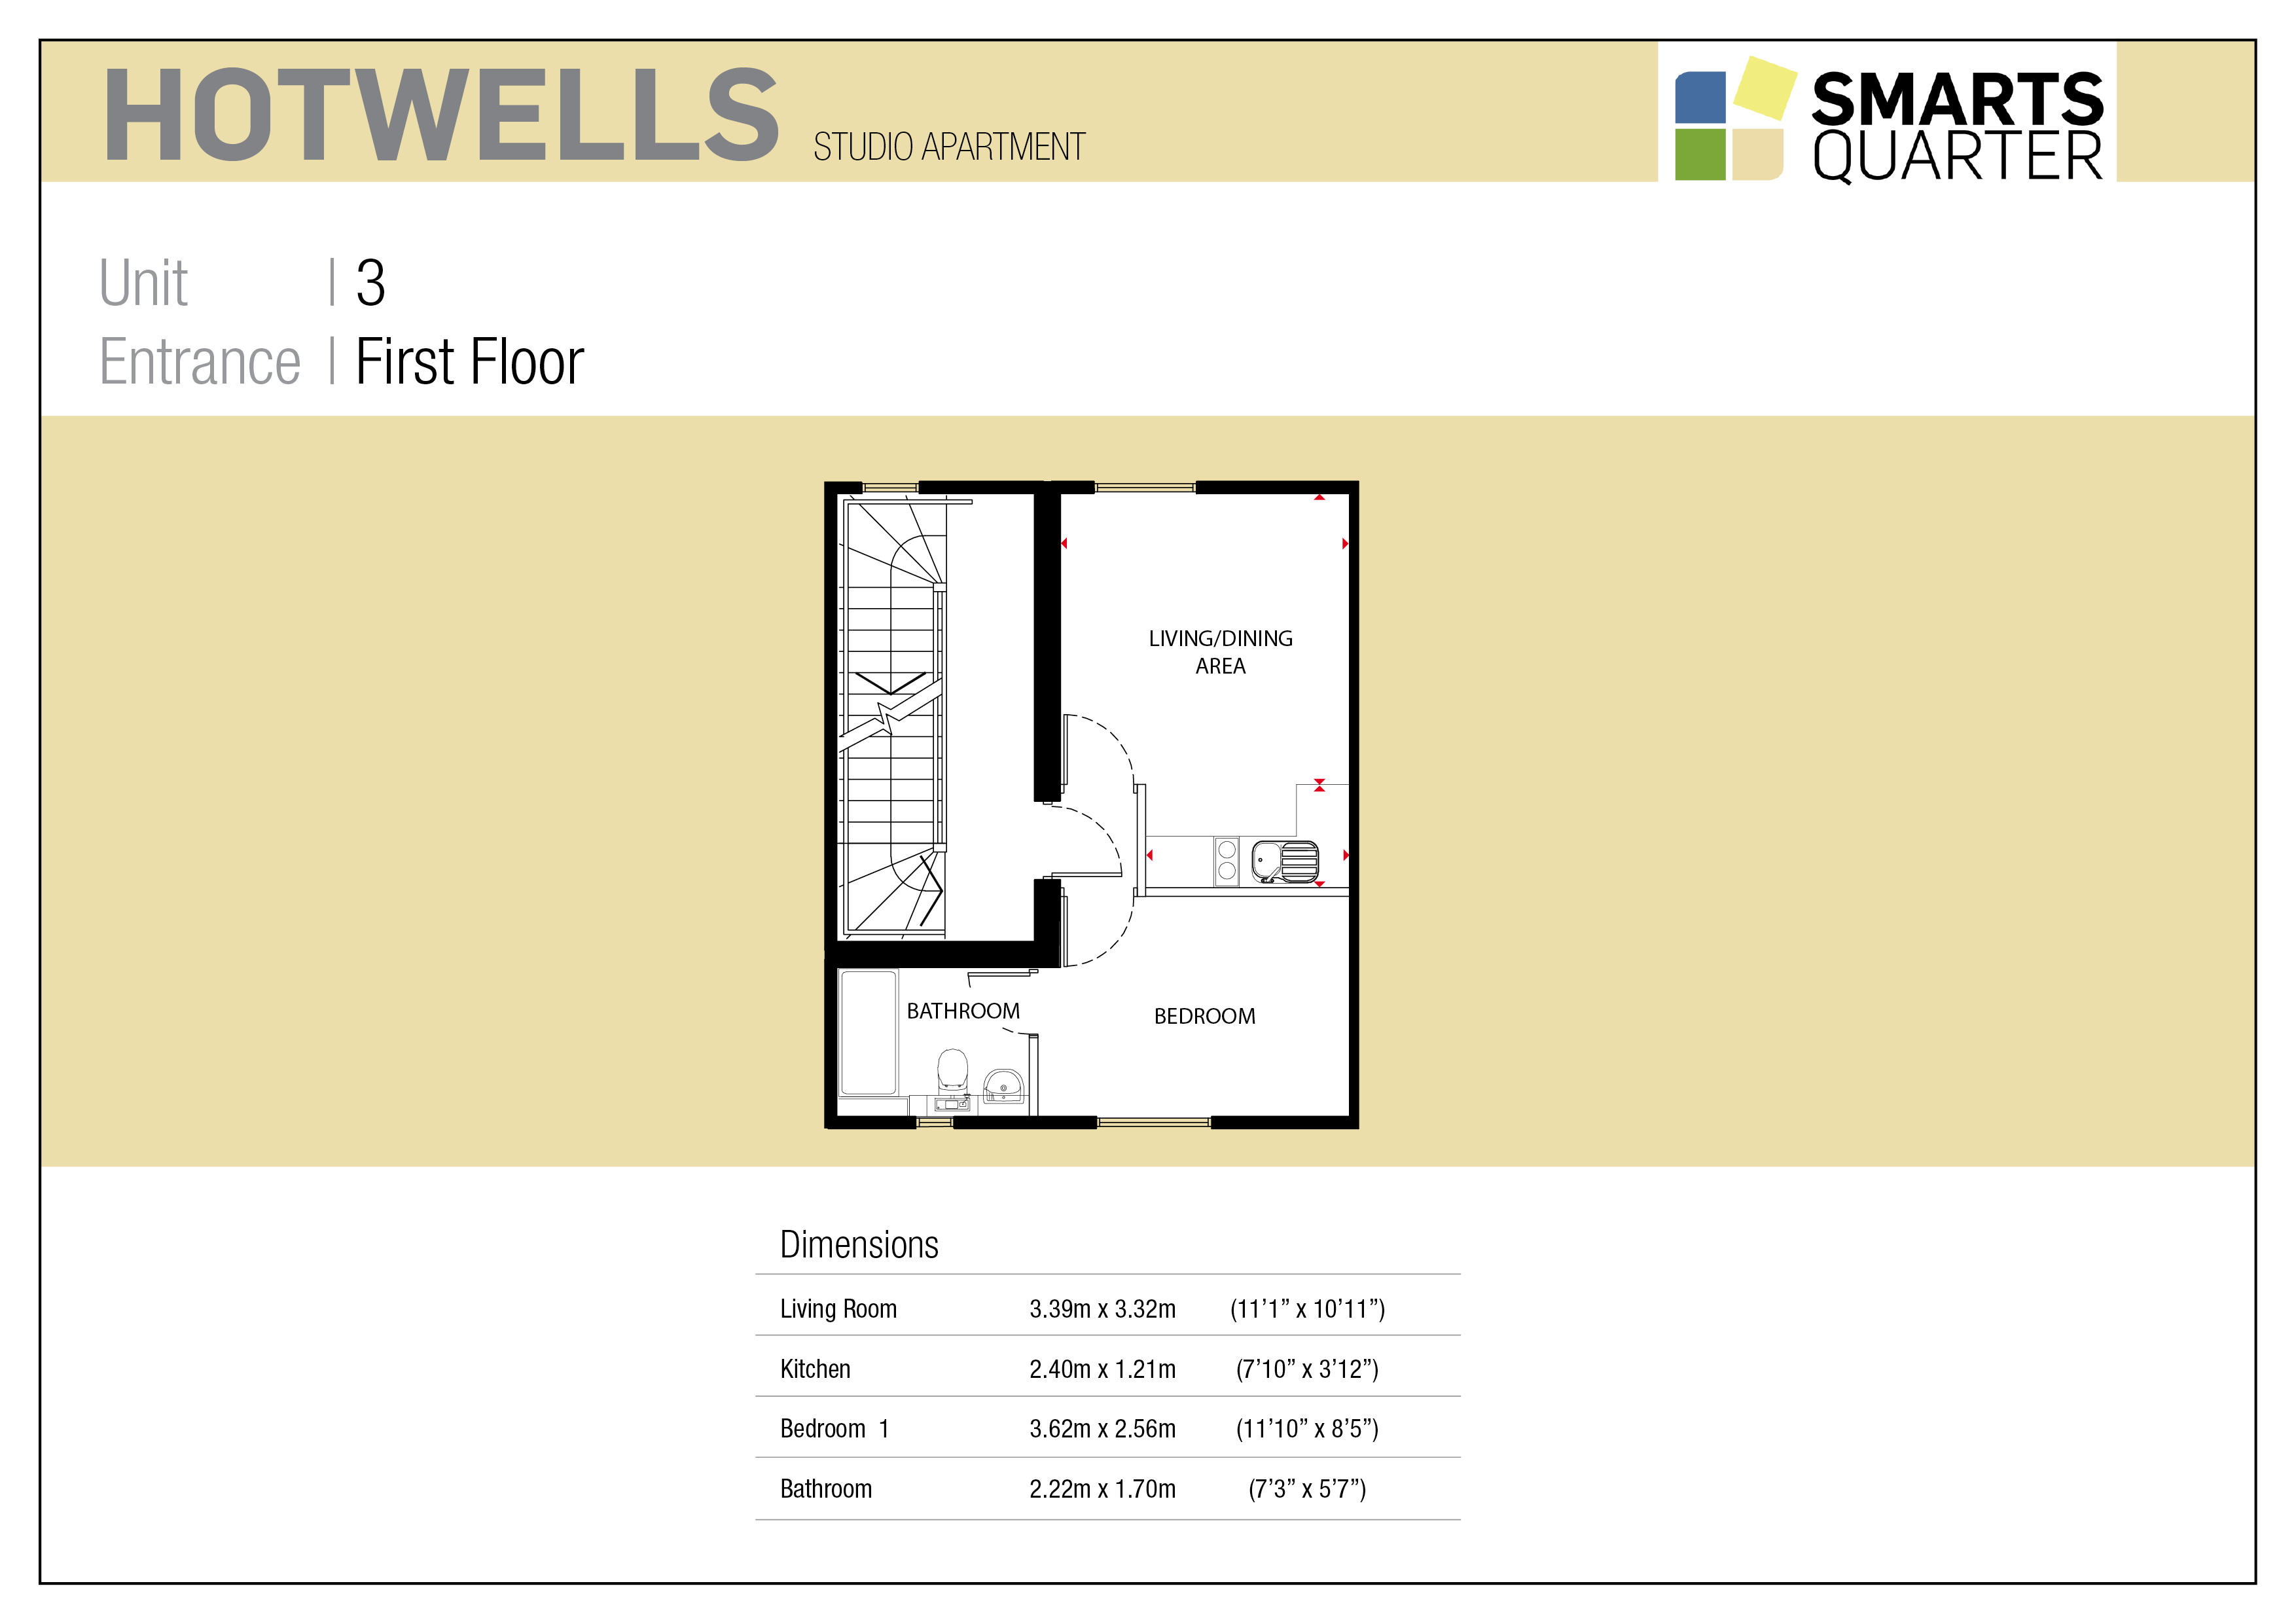 Hotwells Apartment Floor Plan at New Smarts Quarter Development